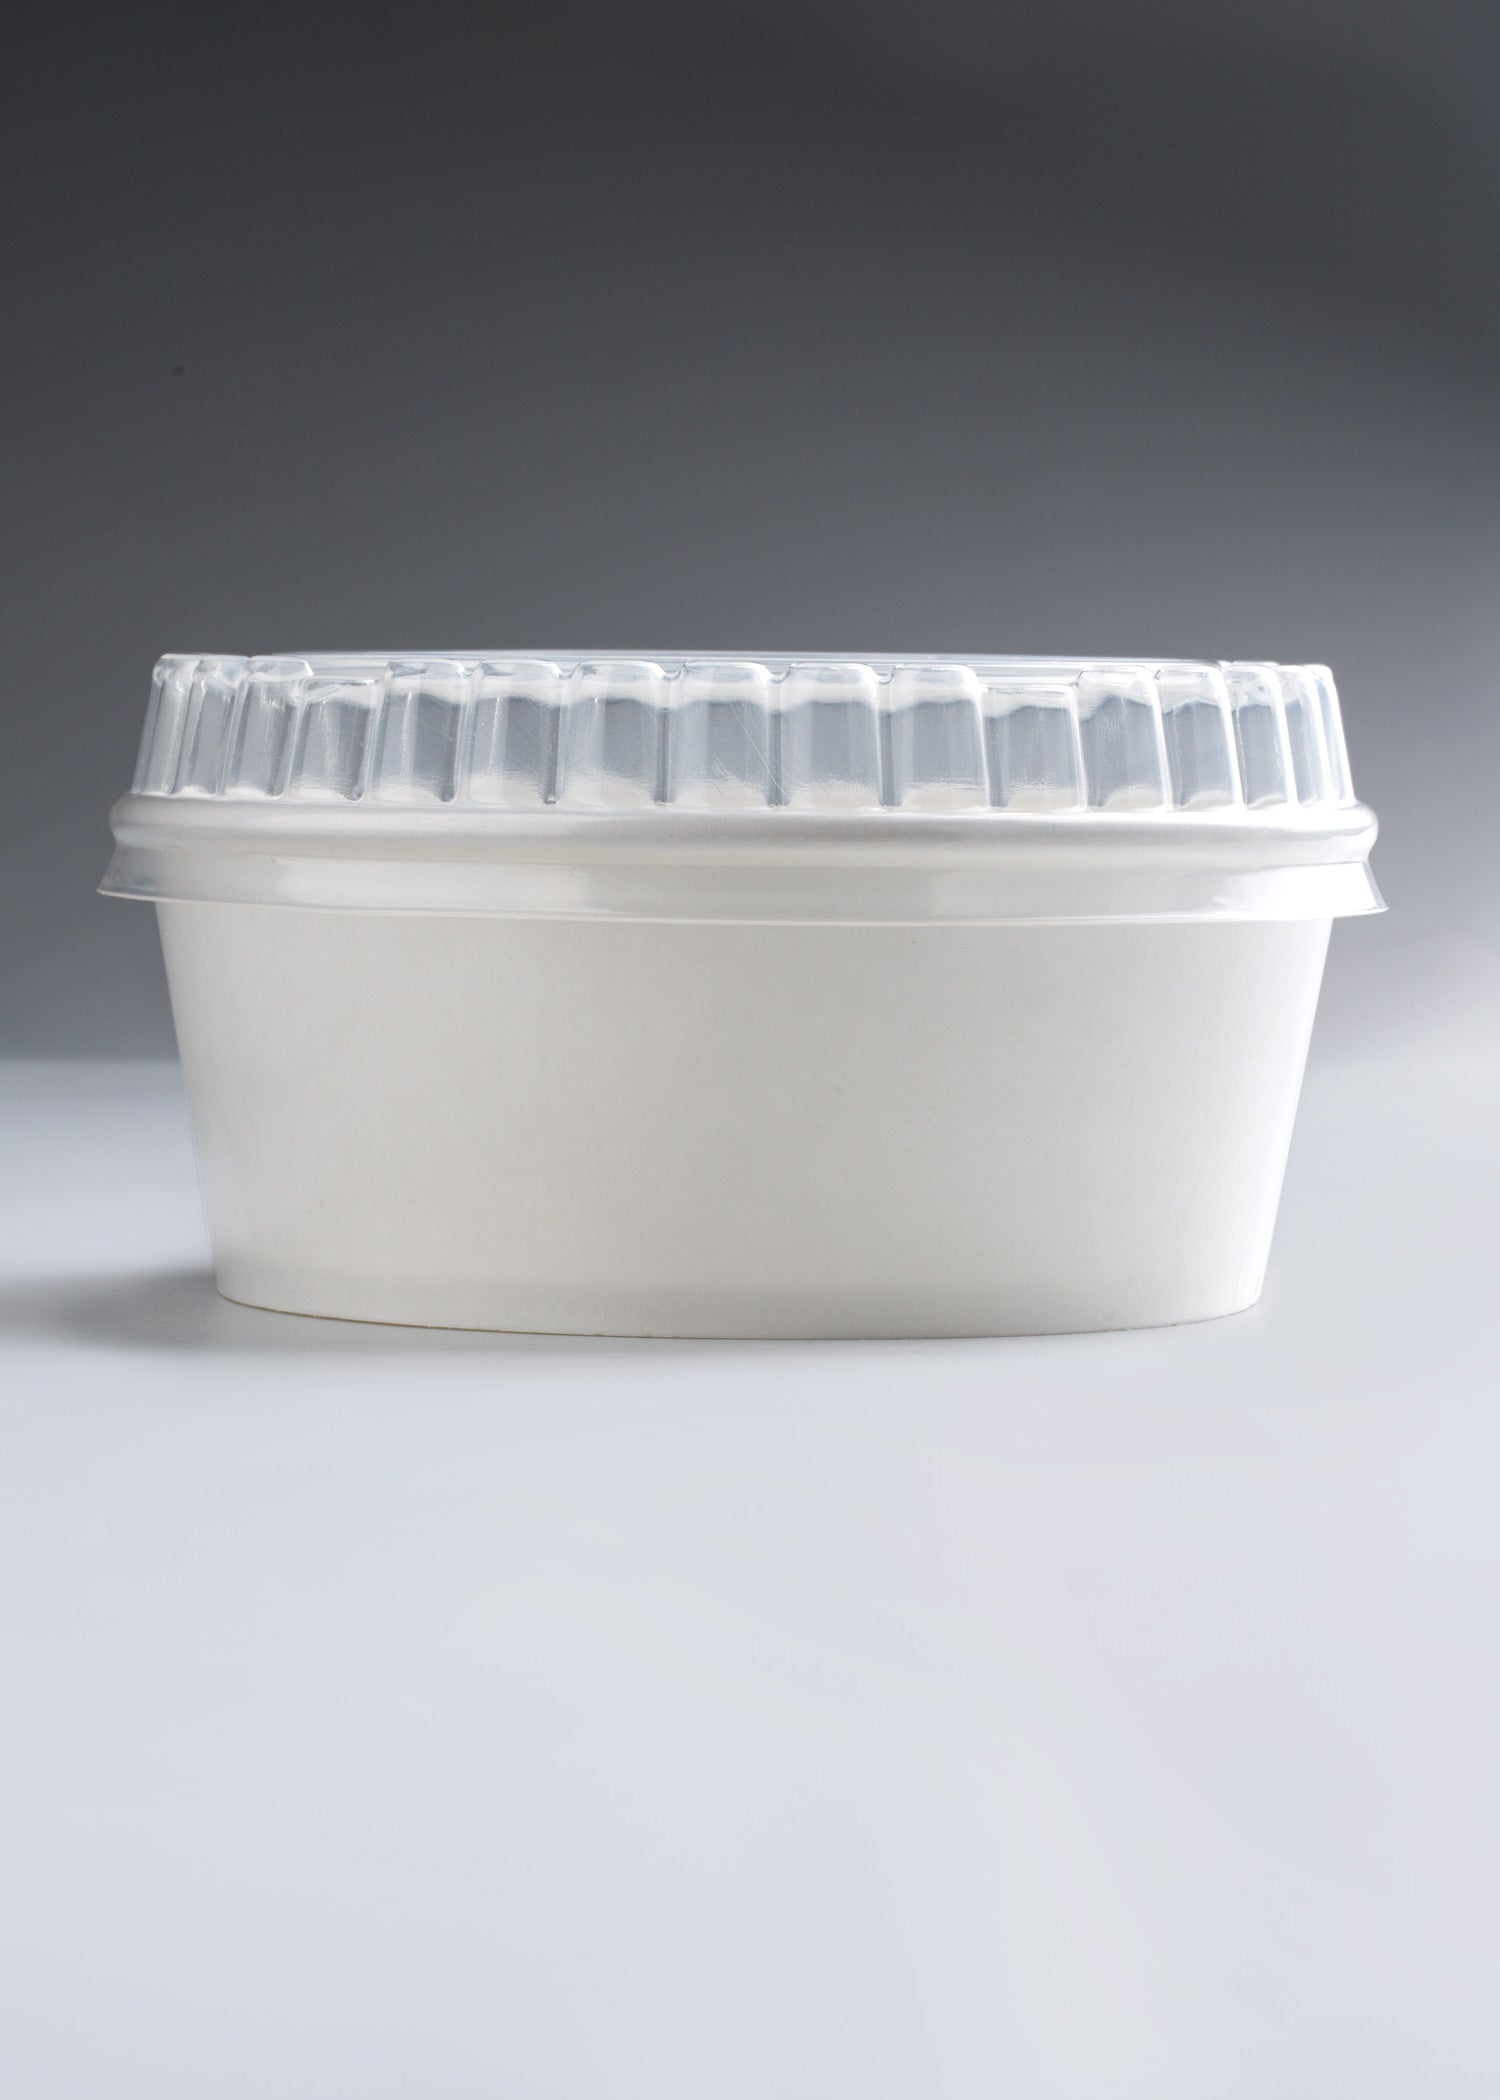 Tapa domo de plástico traslucida para contenedor de 16 oz